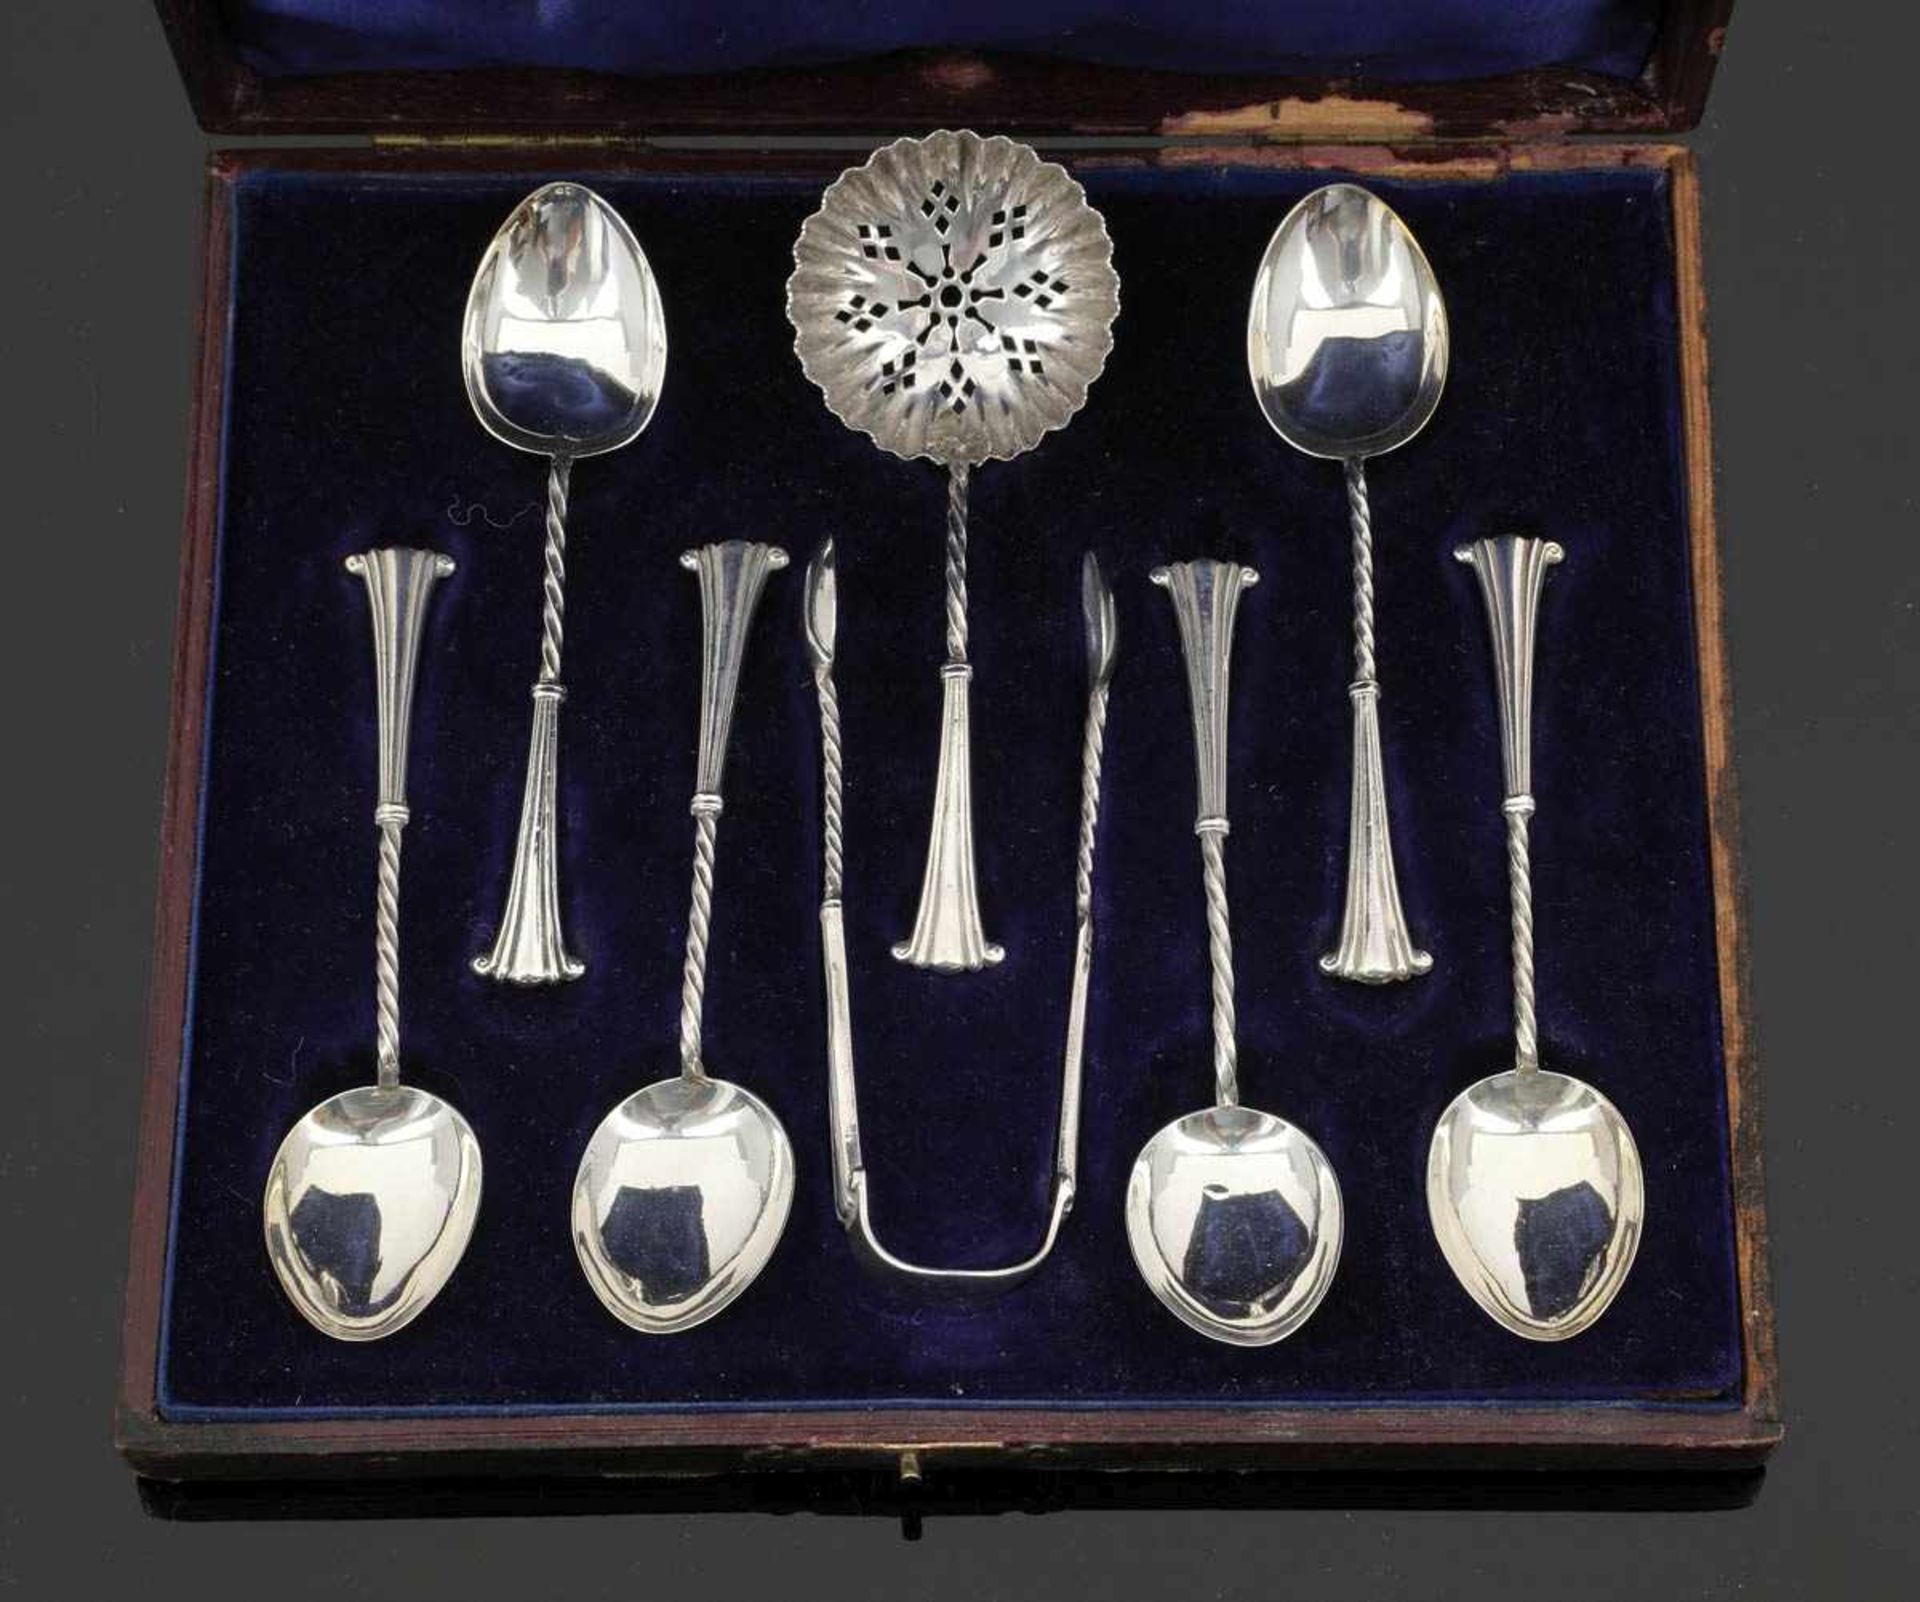 6 Teelöffel, 1 Zuckerzange und 1 Streulöffel Brimingham/England, um 1902/03. 925er Silber. Punzen: